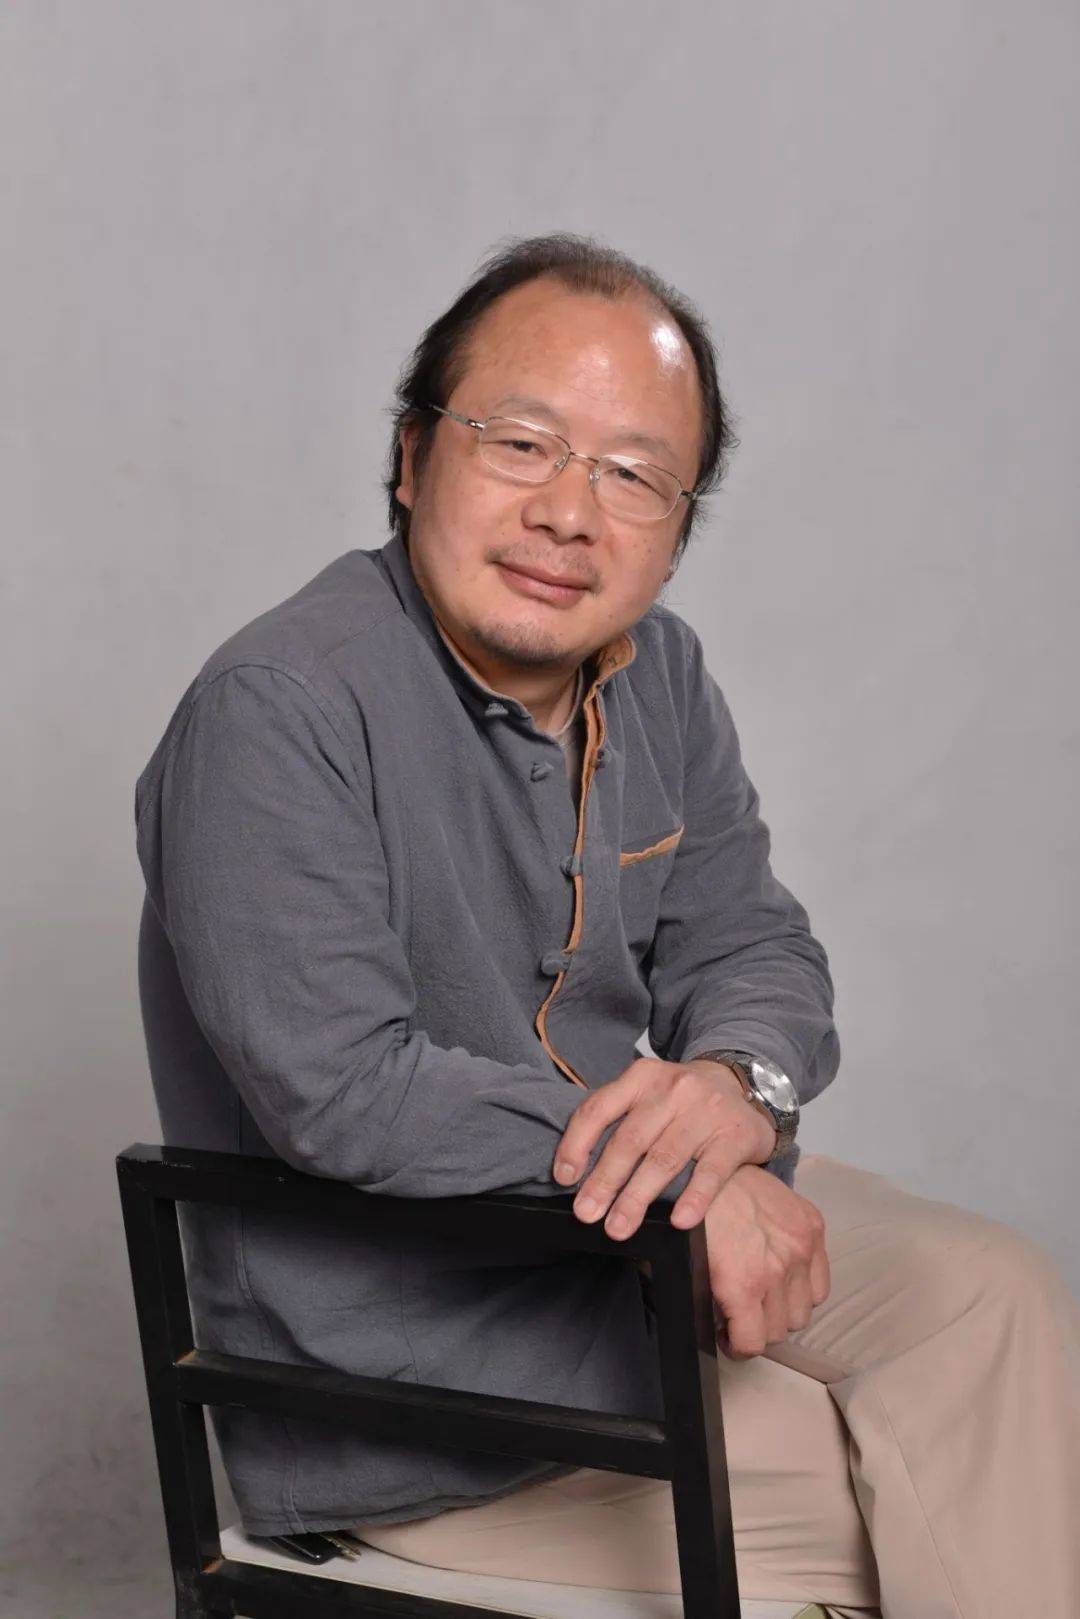 画家简历张清,男,1968年12月生,湖南益阳人,中国民主同盟会员,湖南